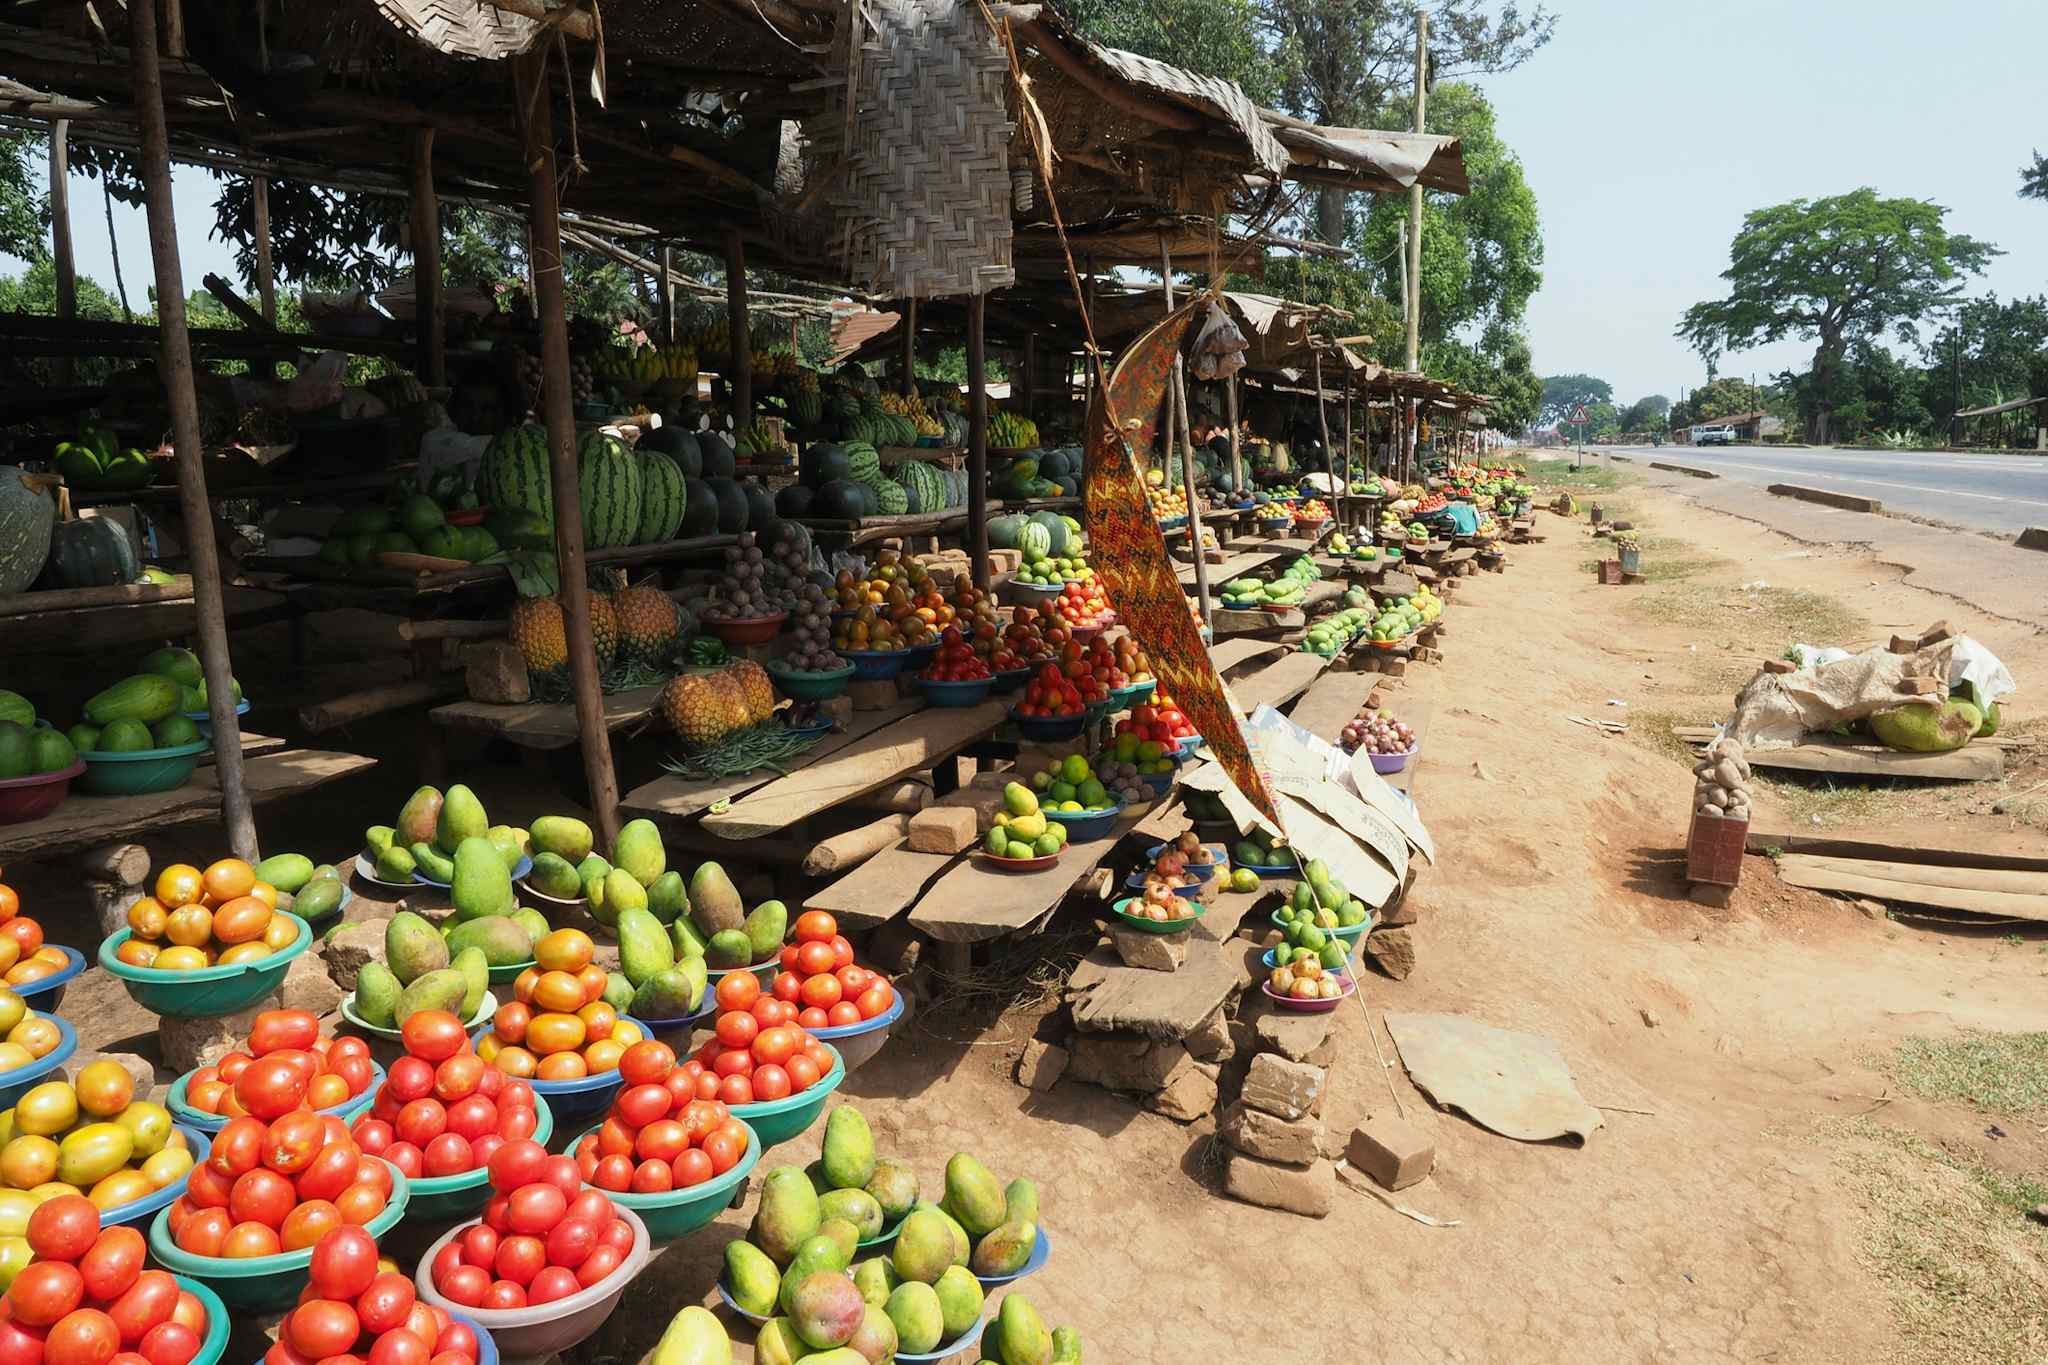 Entebbe market, Uganda
GettyImages-970977418